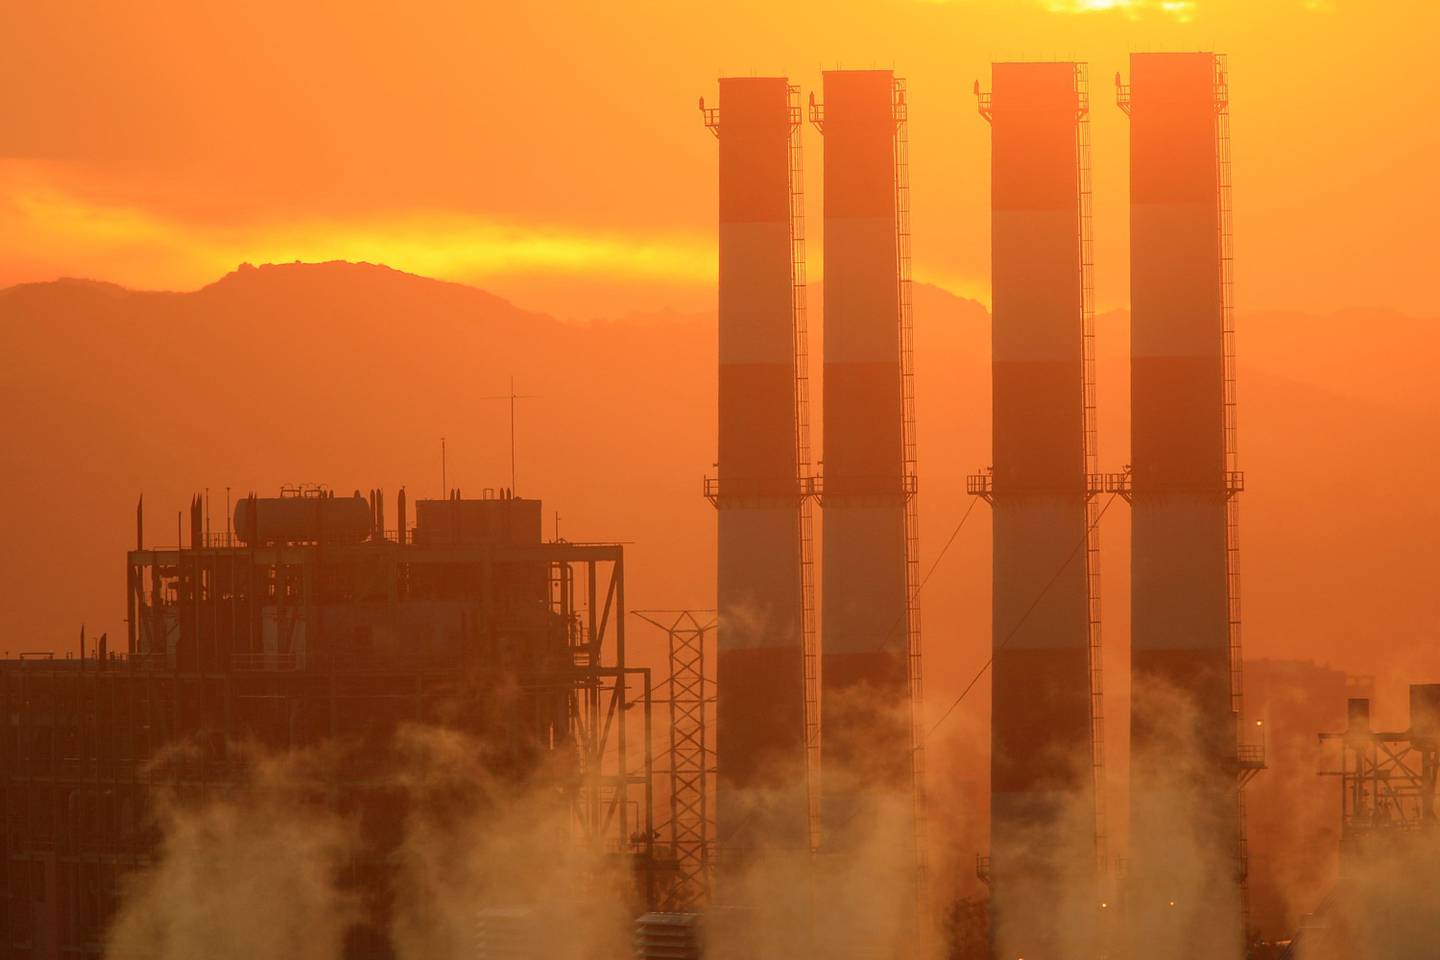 La estación generadora de San Fernando Valley del Departamento de Agua y Energía (DWP) se ve el 11 de diciembre de 2008 en Sun Valley, California.